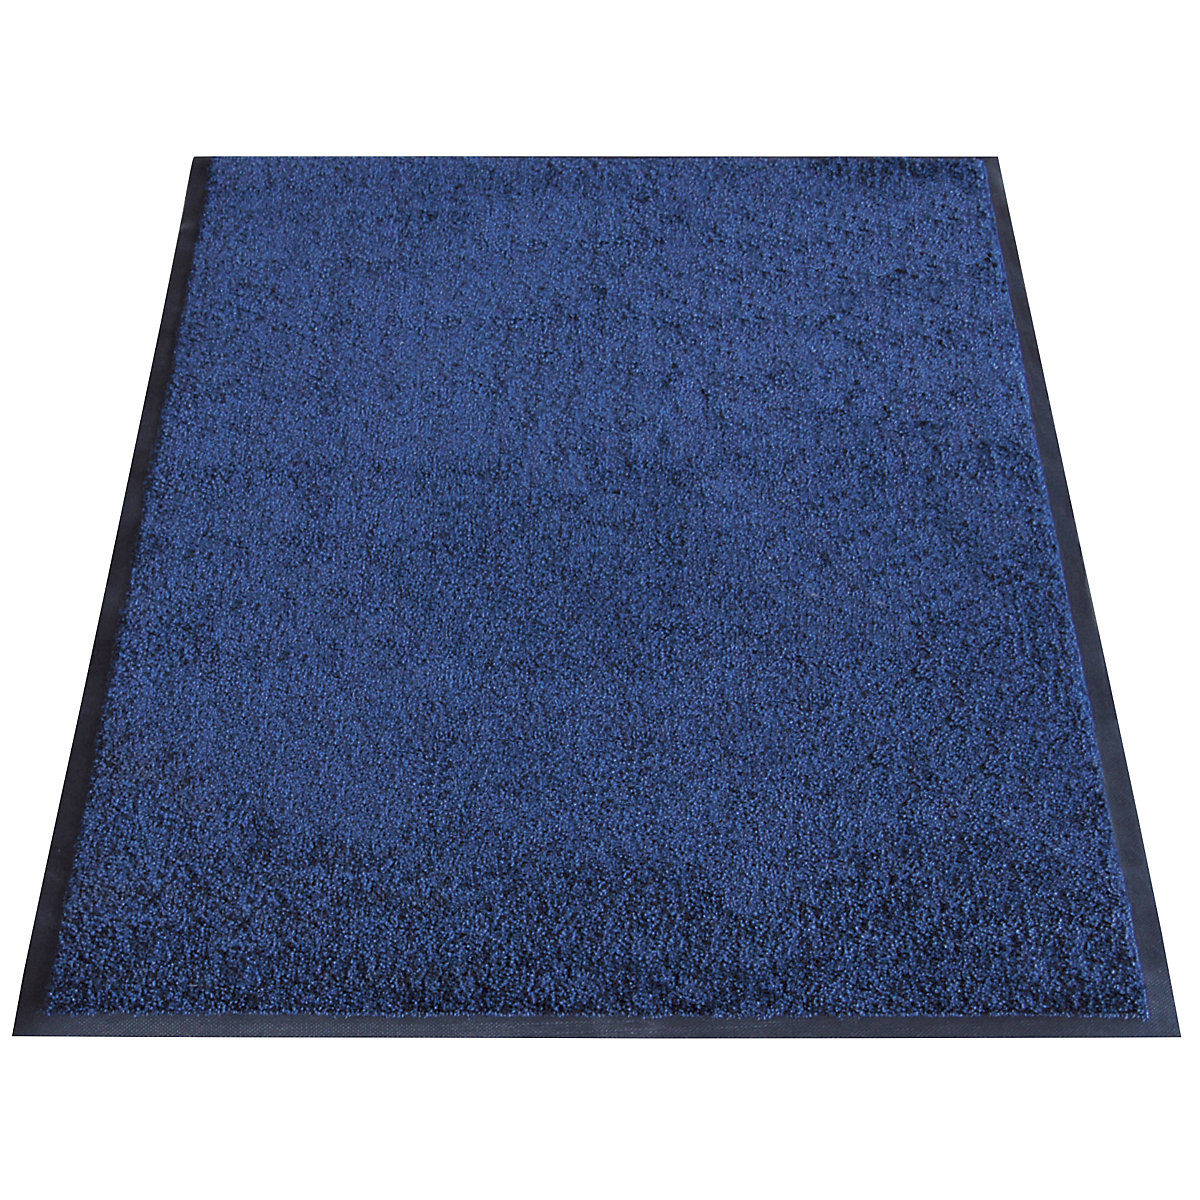 Mata wychwytująca brud EAZYCARE WASH, dł. x szer. 1500 x 850 mm, niebieski